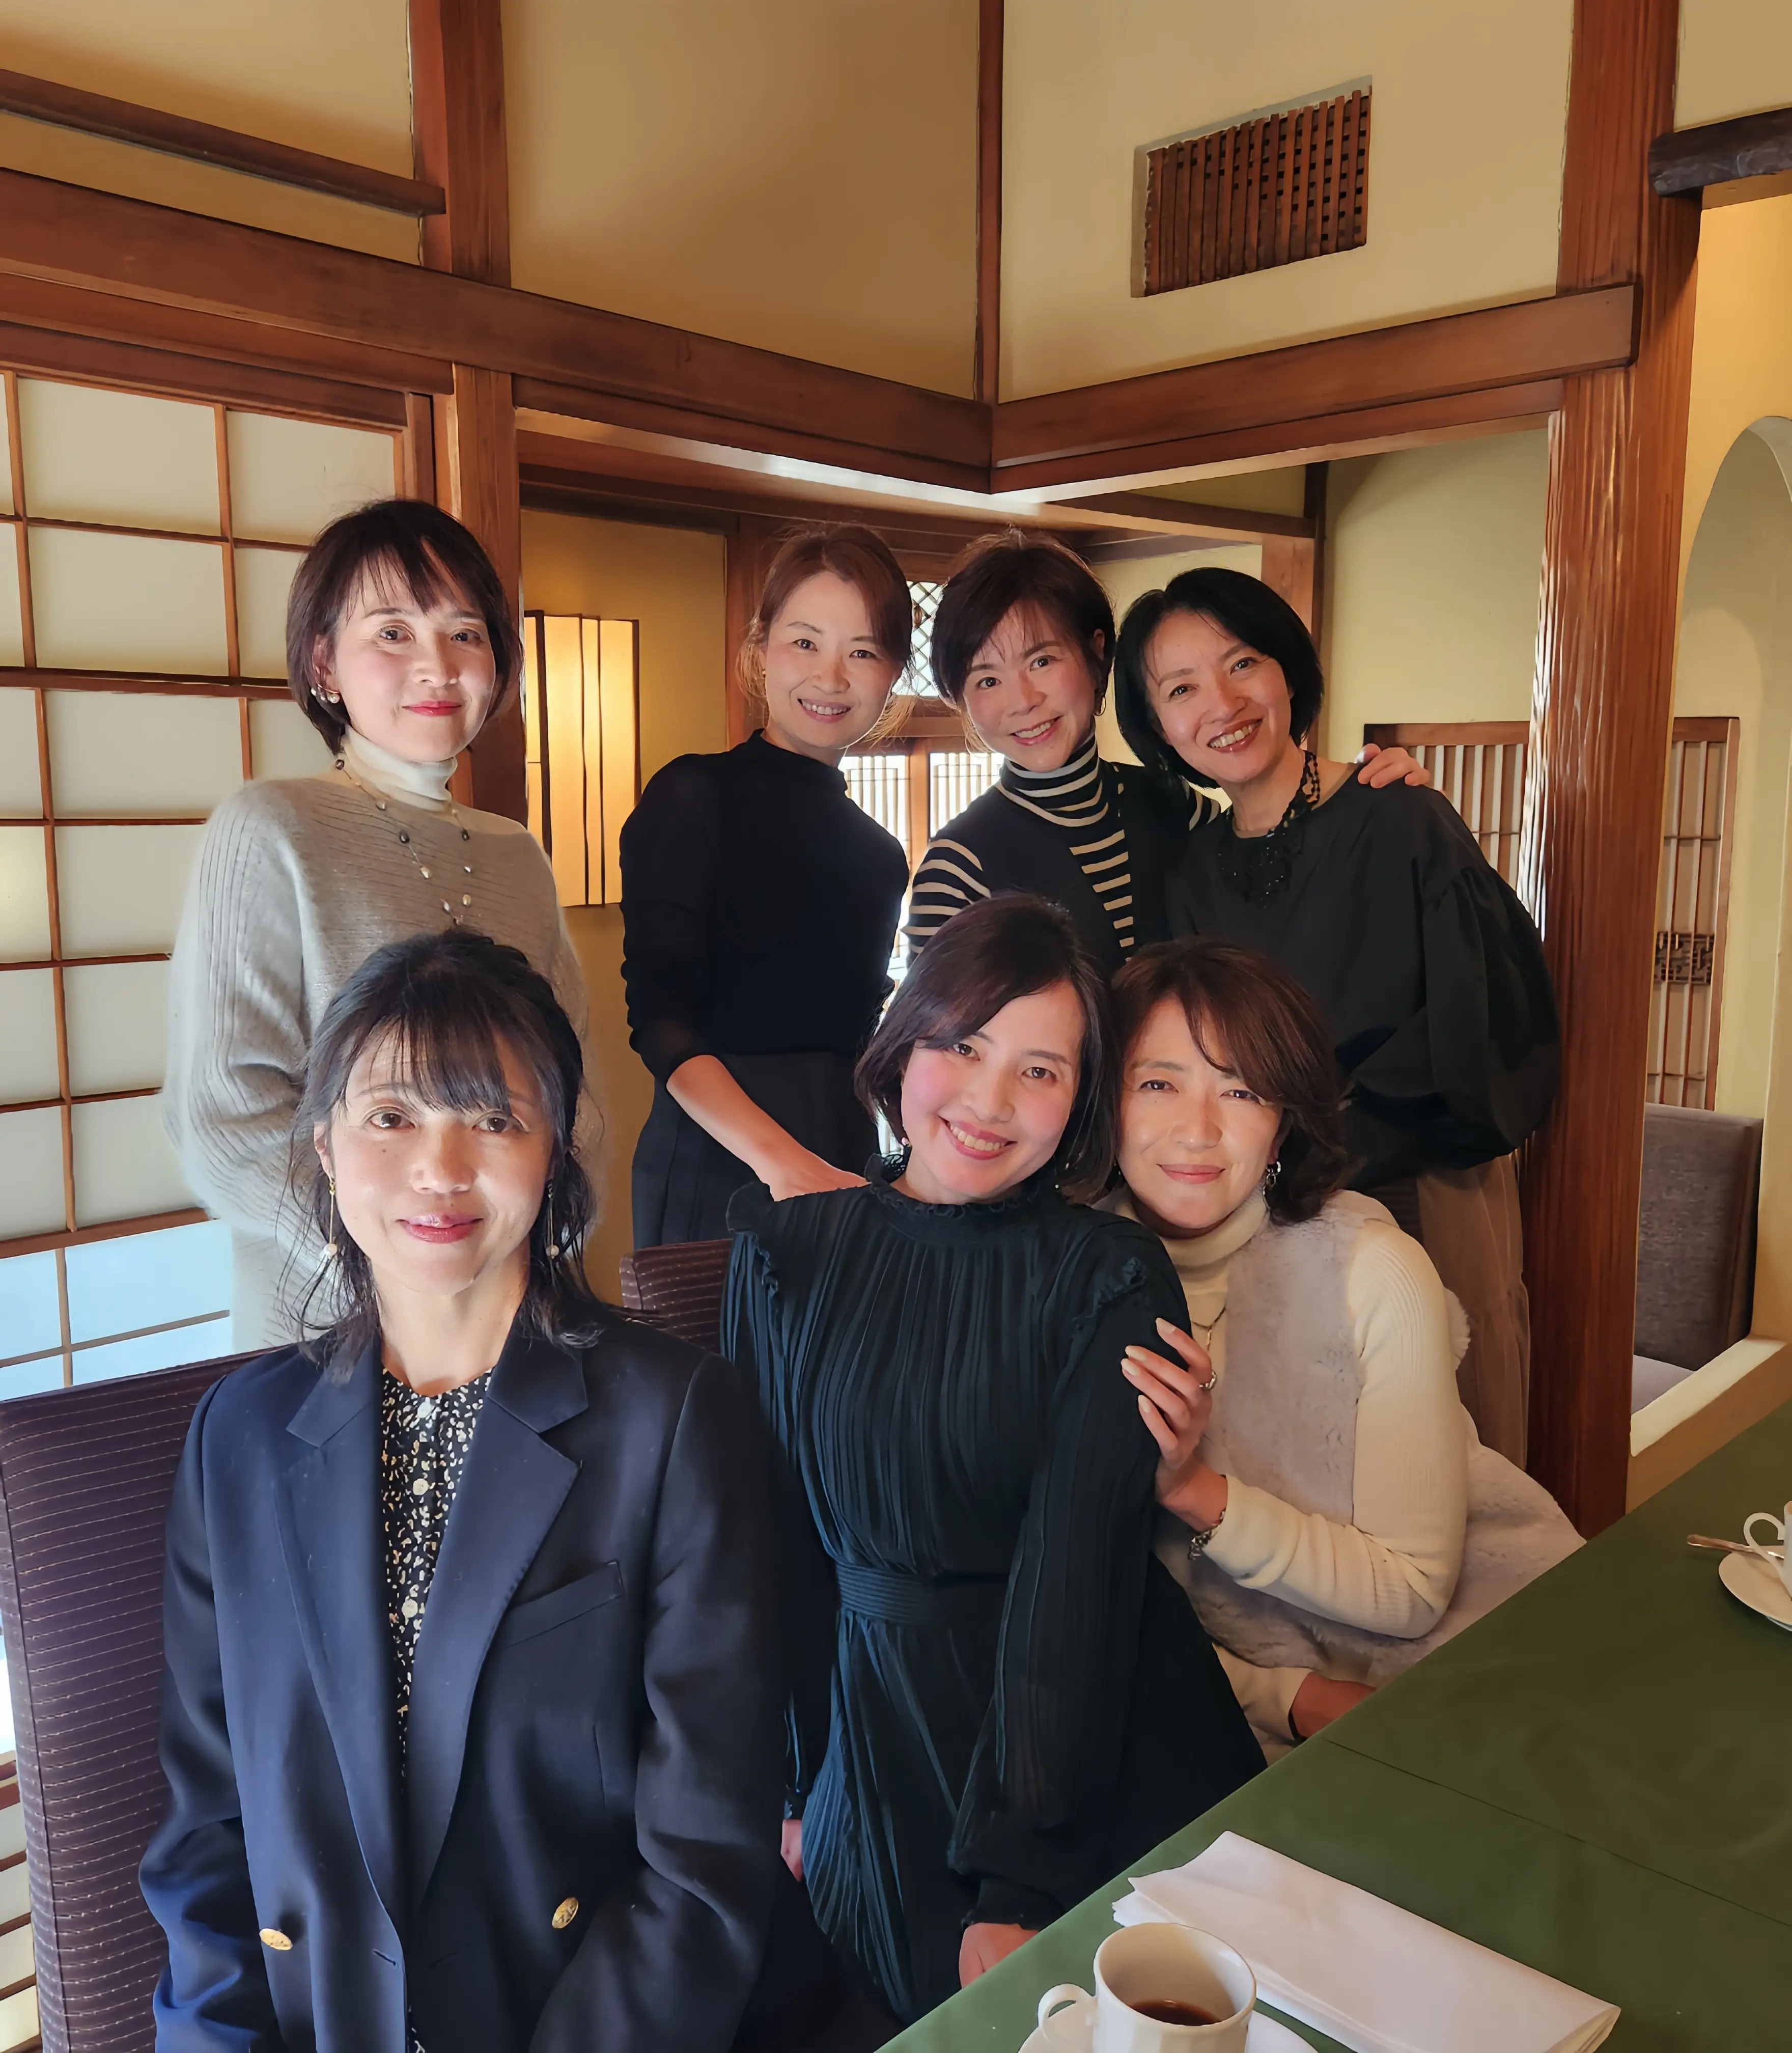 後列左から、CHIKAOちゃん、akikちゃん、私、ゆーちゃん、前例左からUkico.ちゃん、優美ちゃん、菜穂子ちゃん 